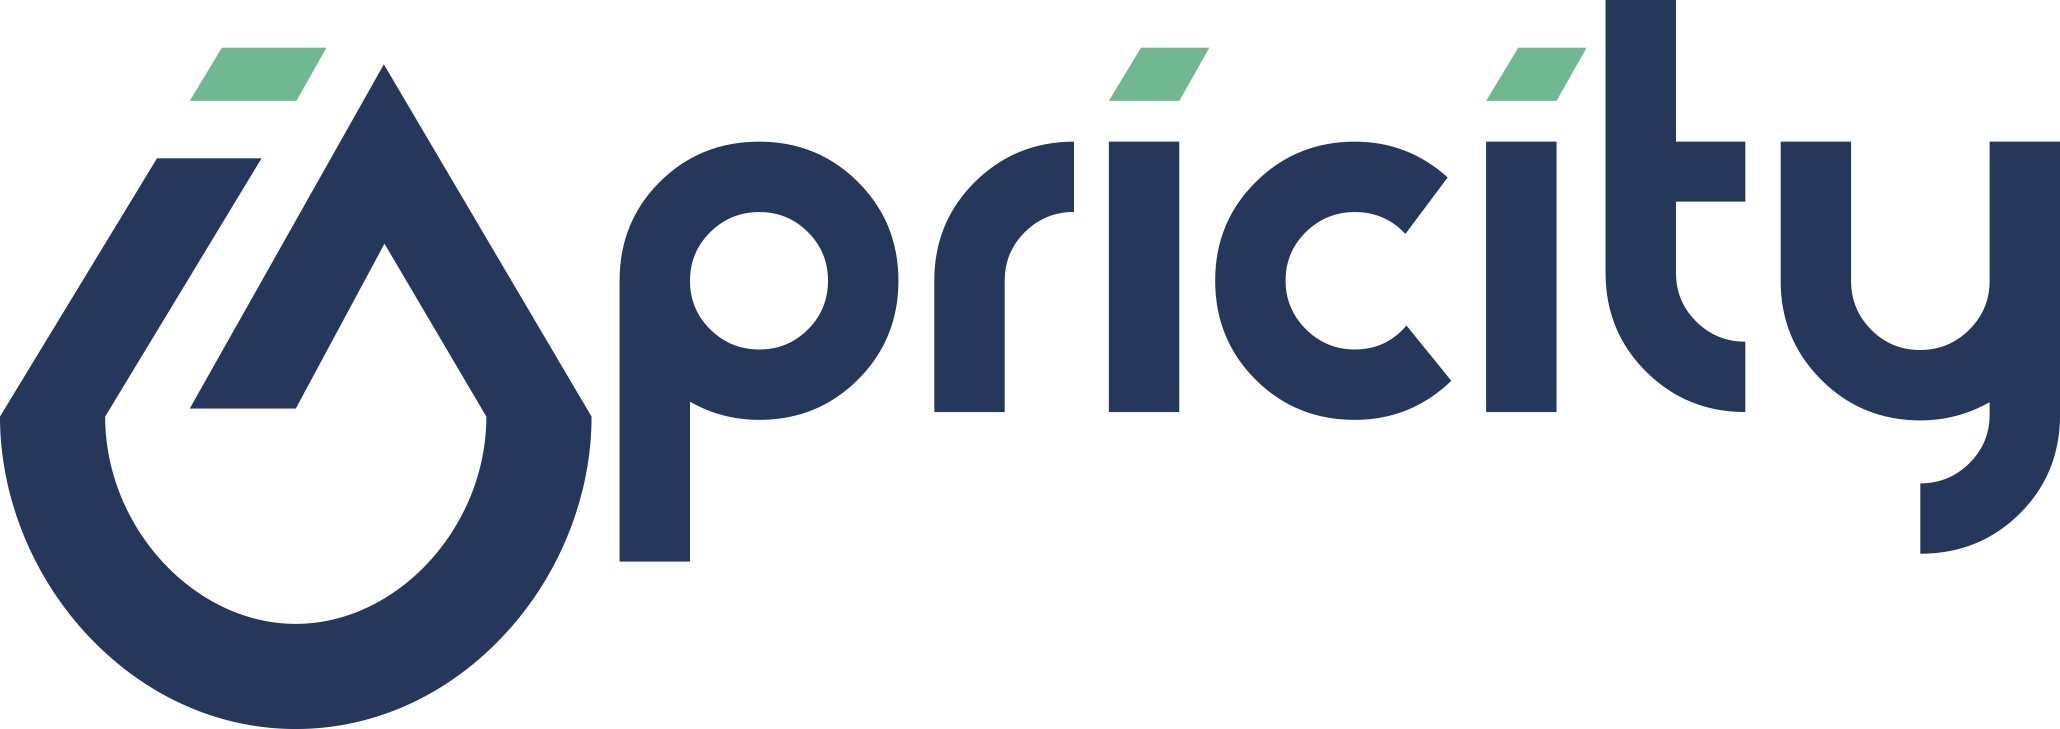 Iapricity LLC Logo